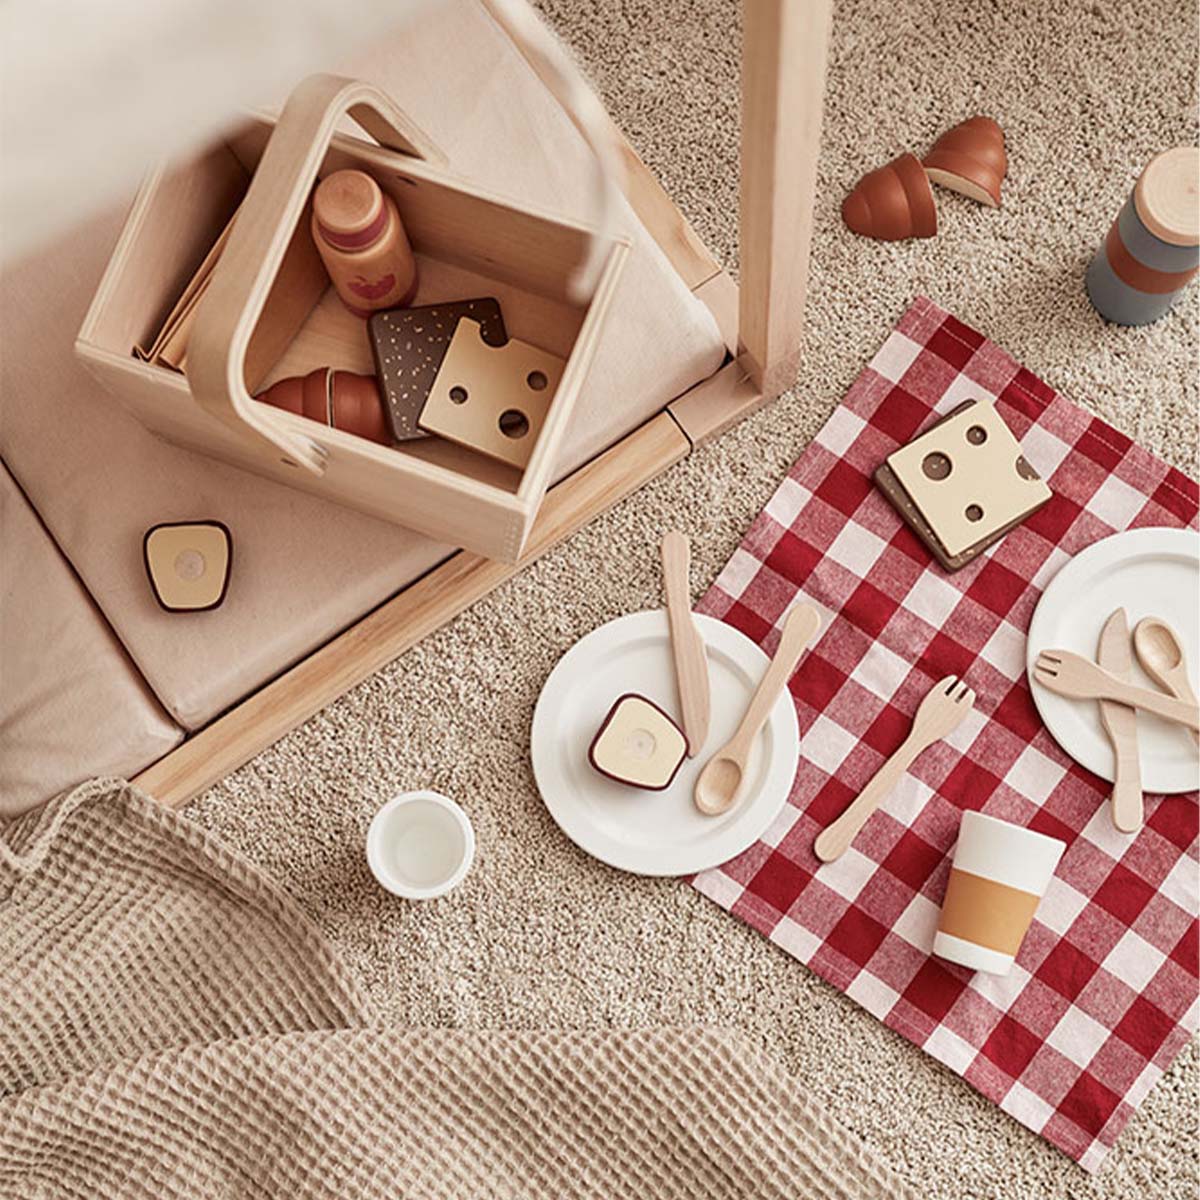 Met de Kid’s Concept picknickset kan jouw kindje een heerlijke picknick voorbereiden. Lekker buiten in de tuin of op een regenachtige dag gezellig binnen. Mandje mee, kleedje op de grond en al het lekkers erbij. VanZus.